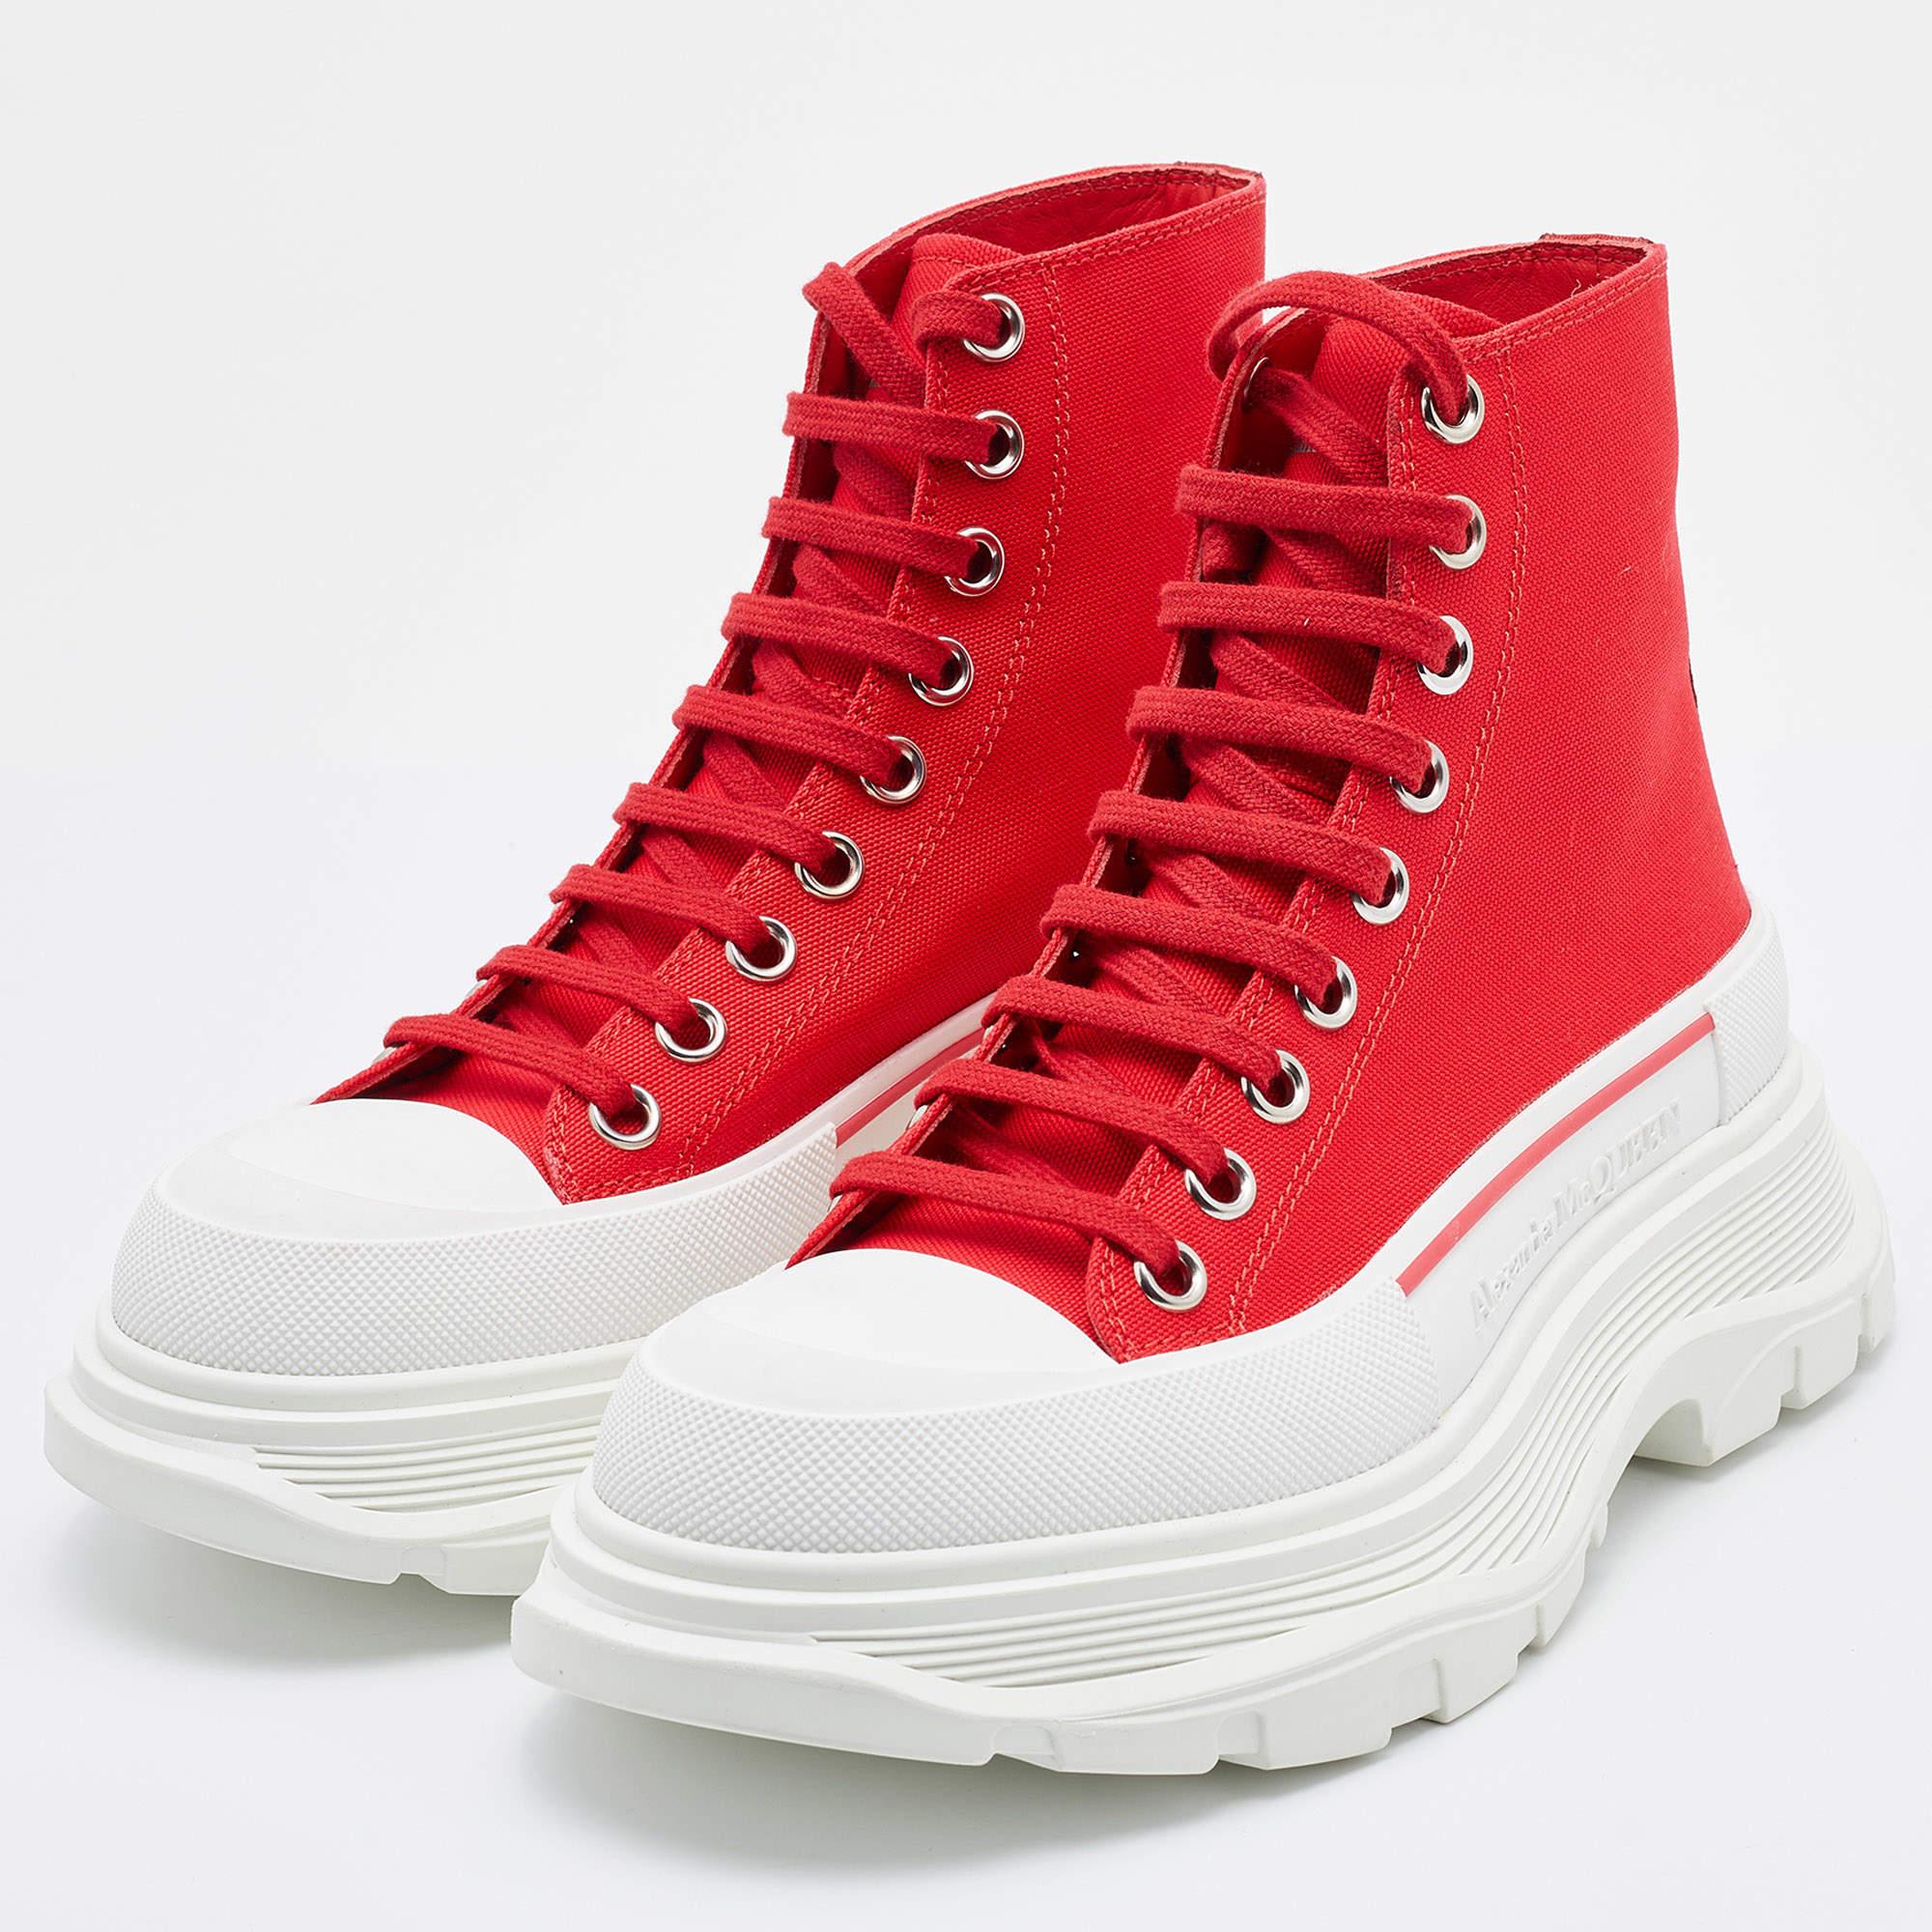 Women's Alexander McQueen Red Canvas Tread Slick High Top Sneakers Size 36